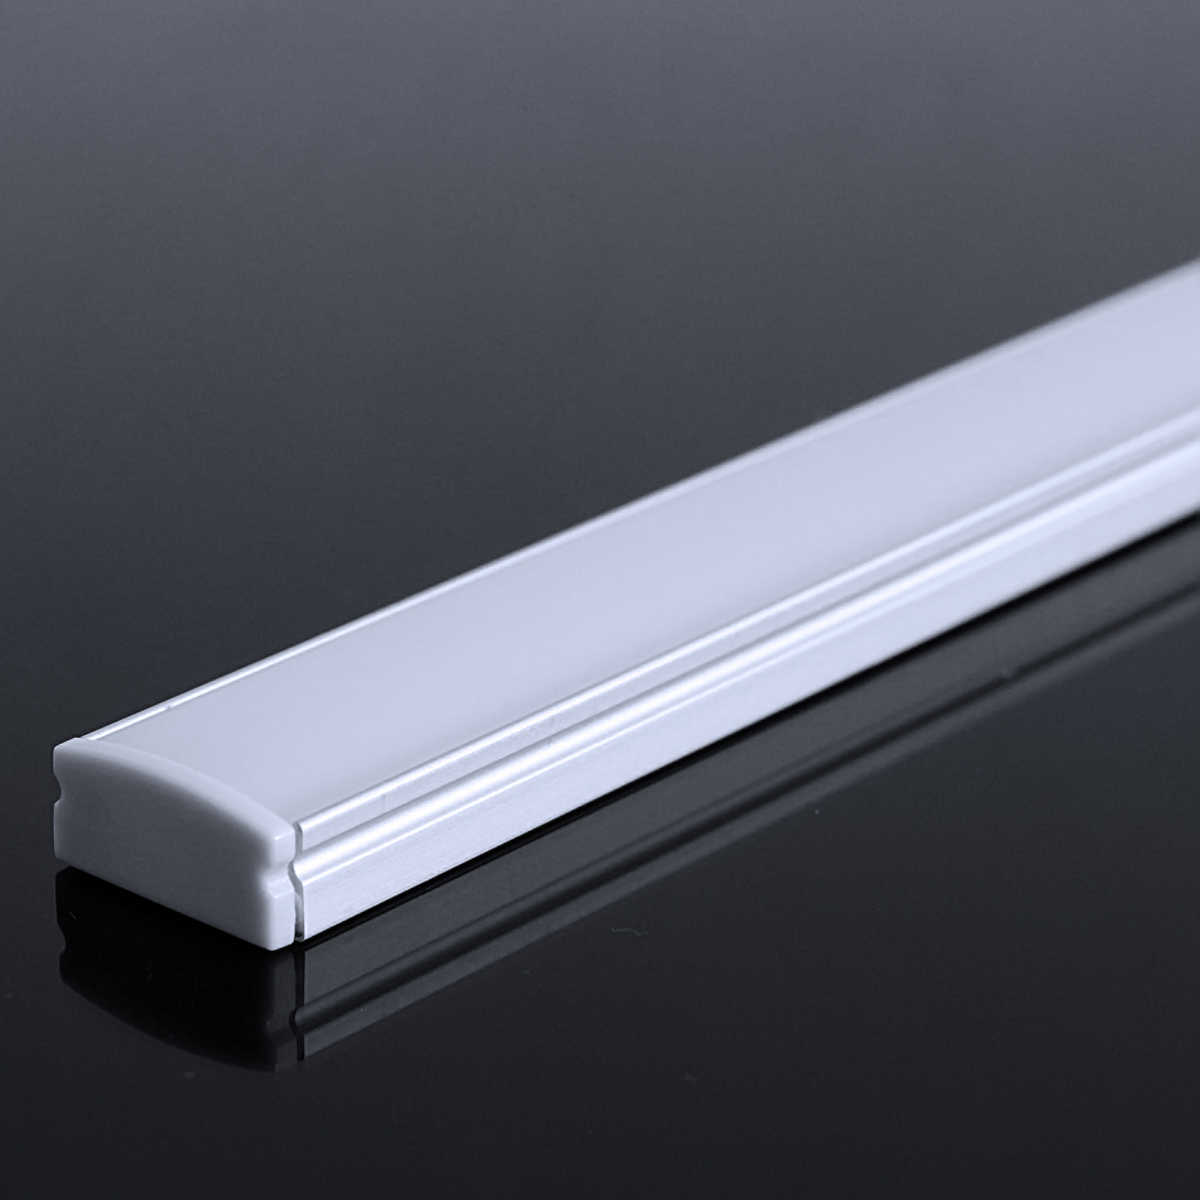 LED Flachprofil "Slim-Line" | Abdeckung diffus | Zuschnitt auf 159cm |